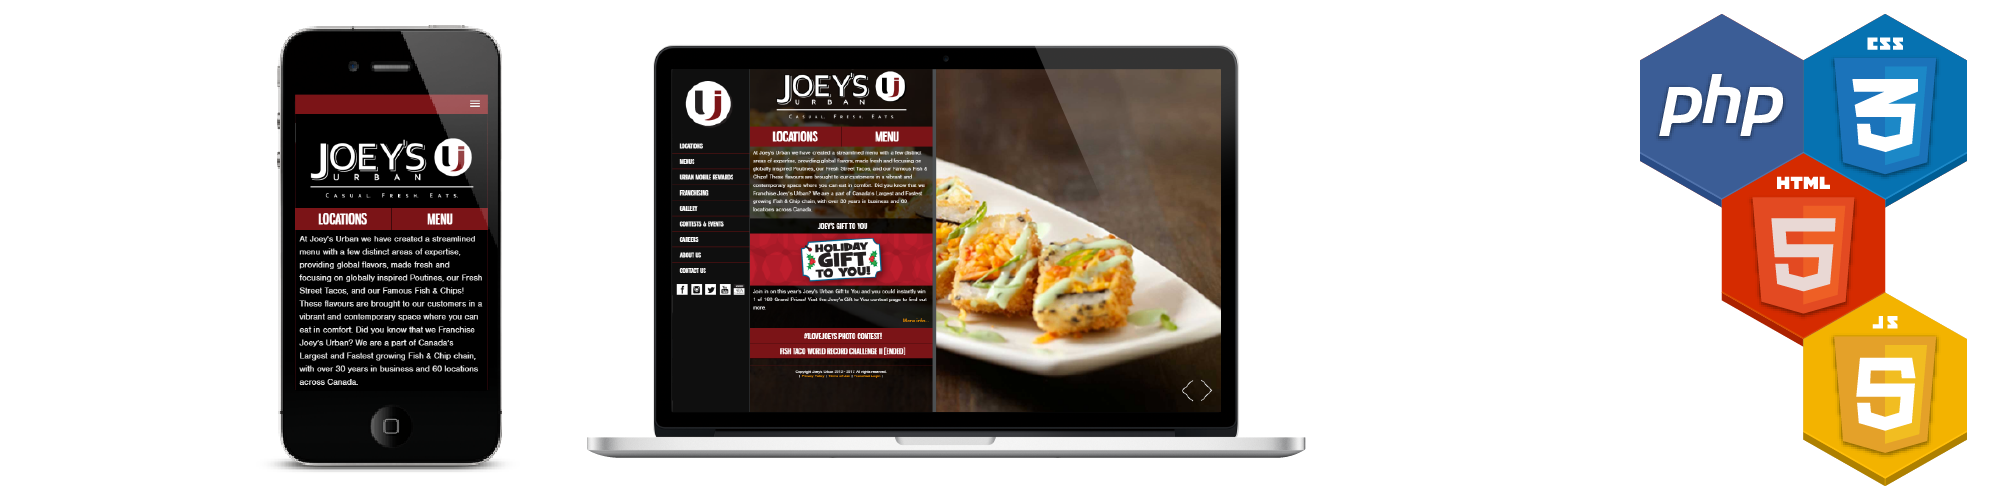 Joey's Urban Website